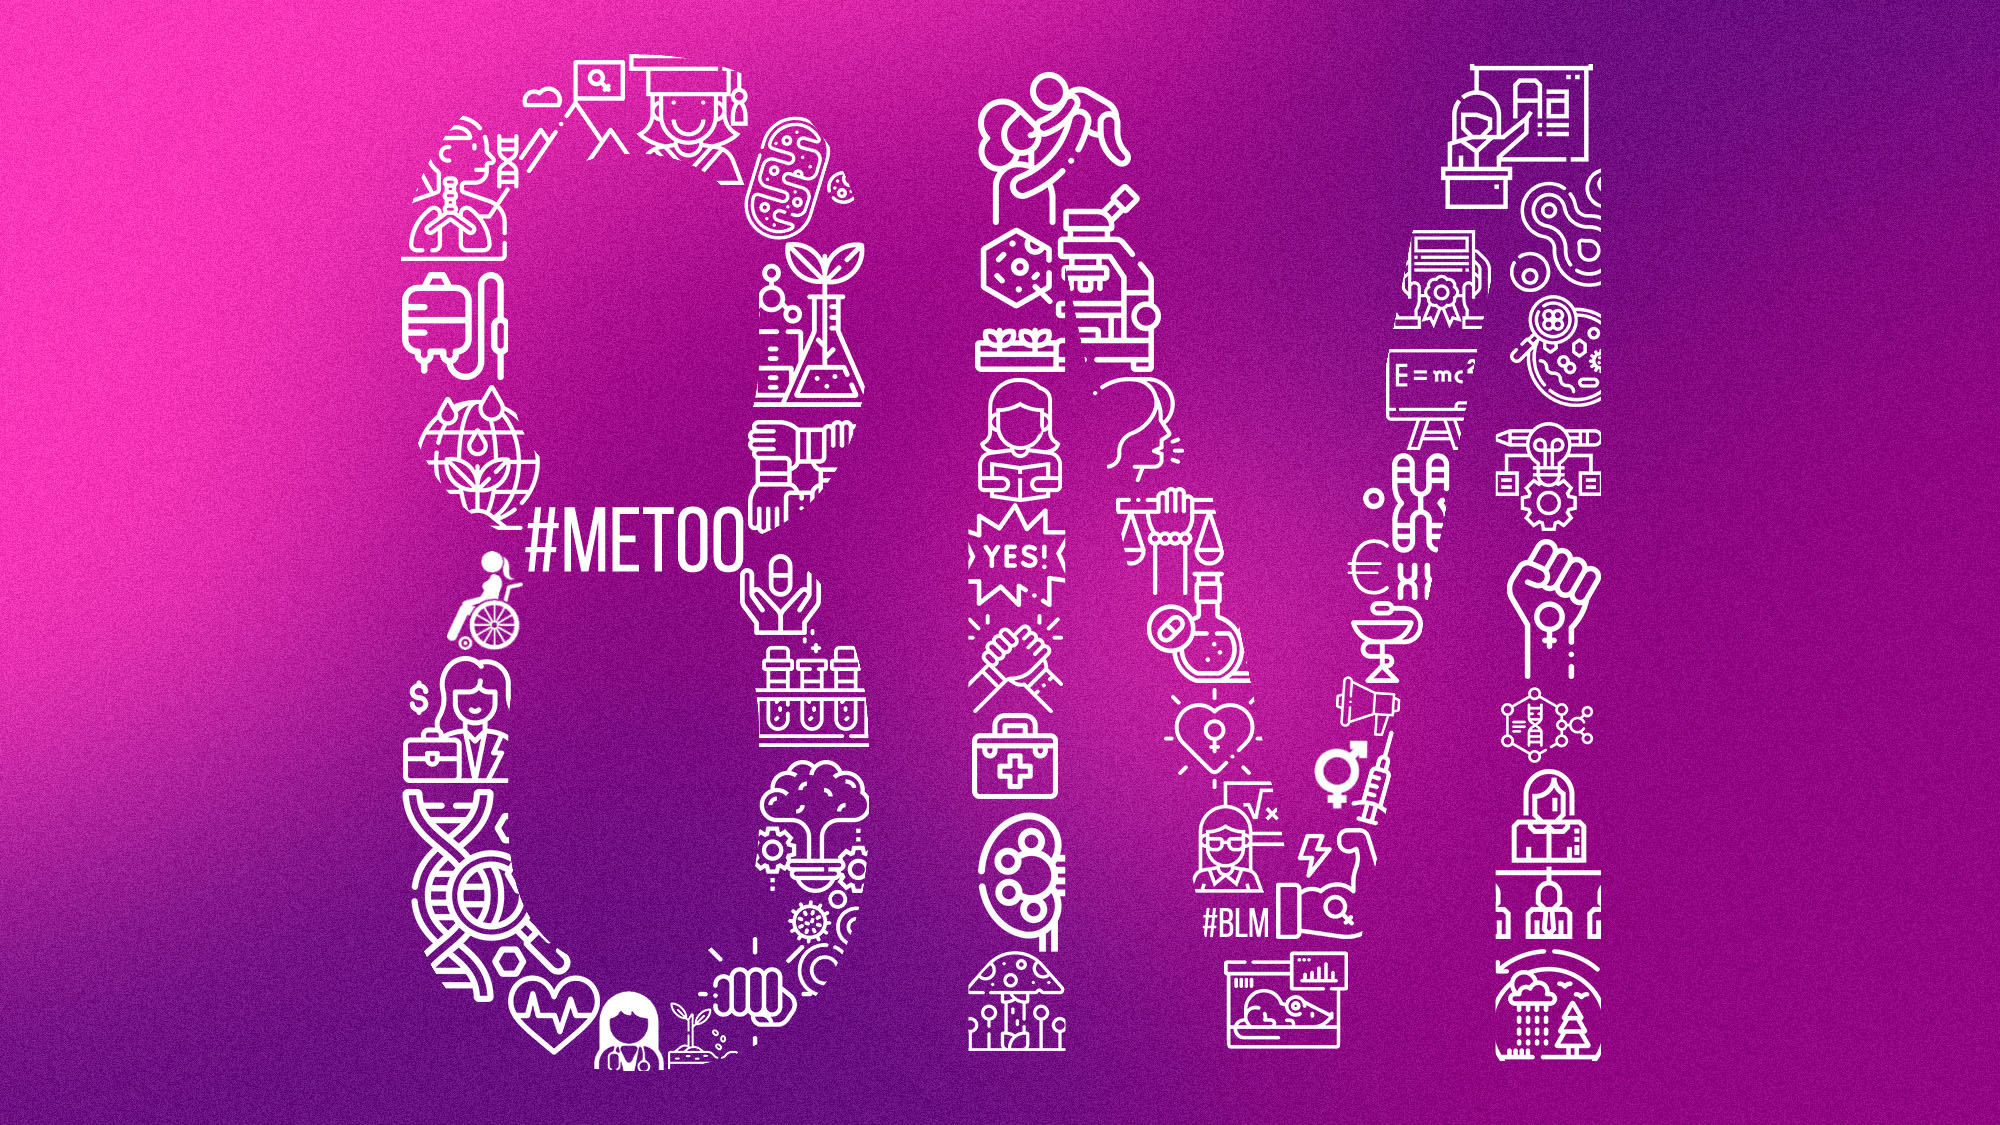 TAquest 8M, Dia Internacional de la Dona, desafiem els estereotips de gènere en ciència. Imatge creada per Mario Ejarque.